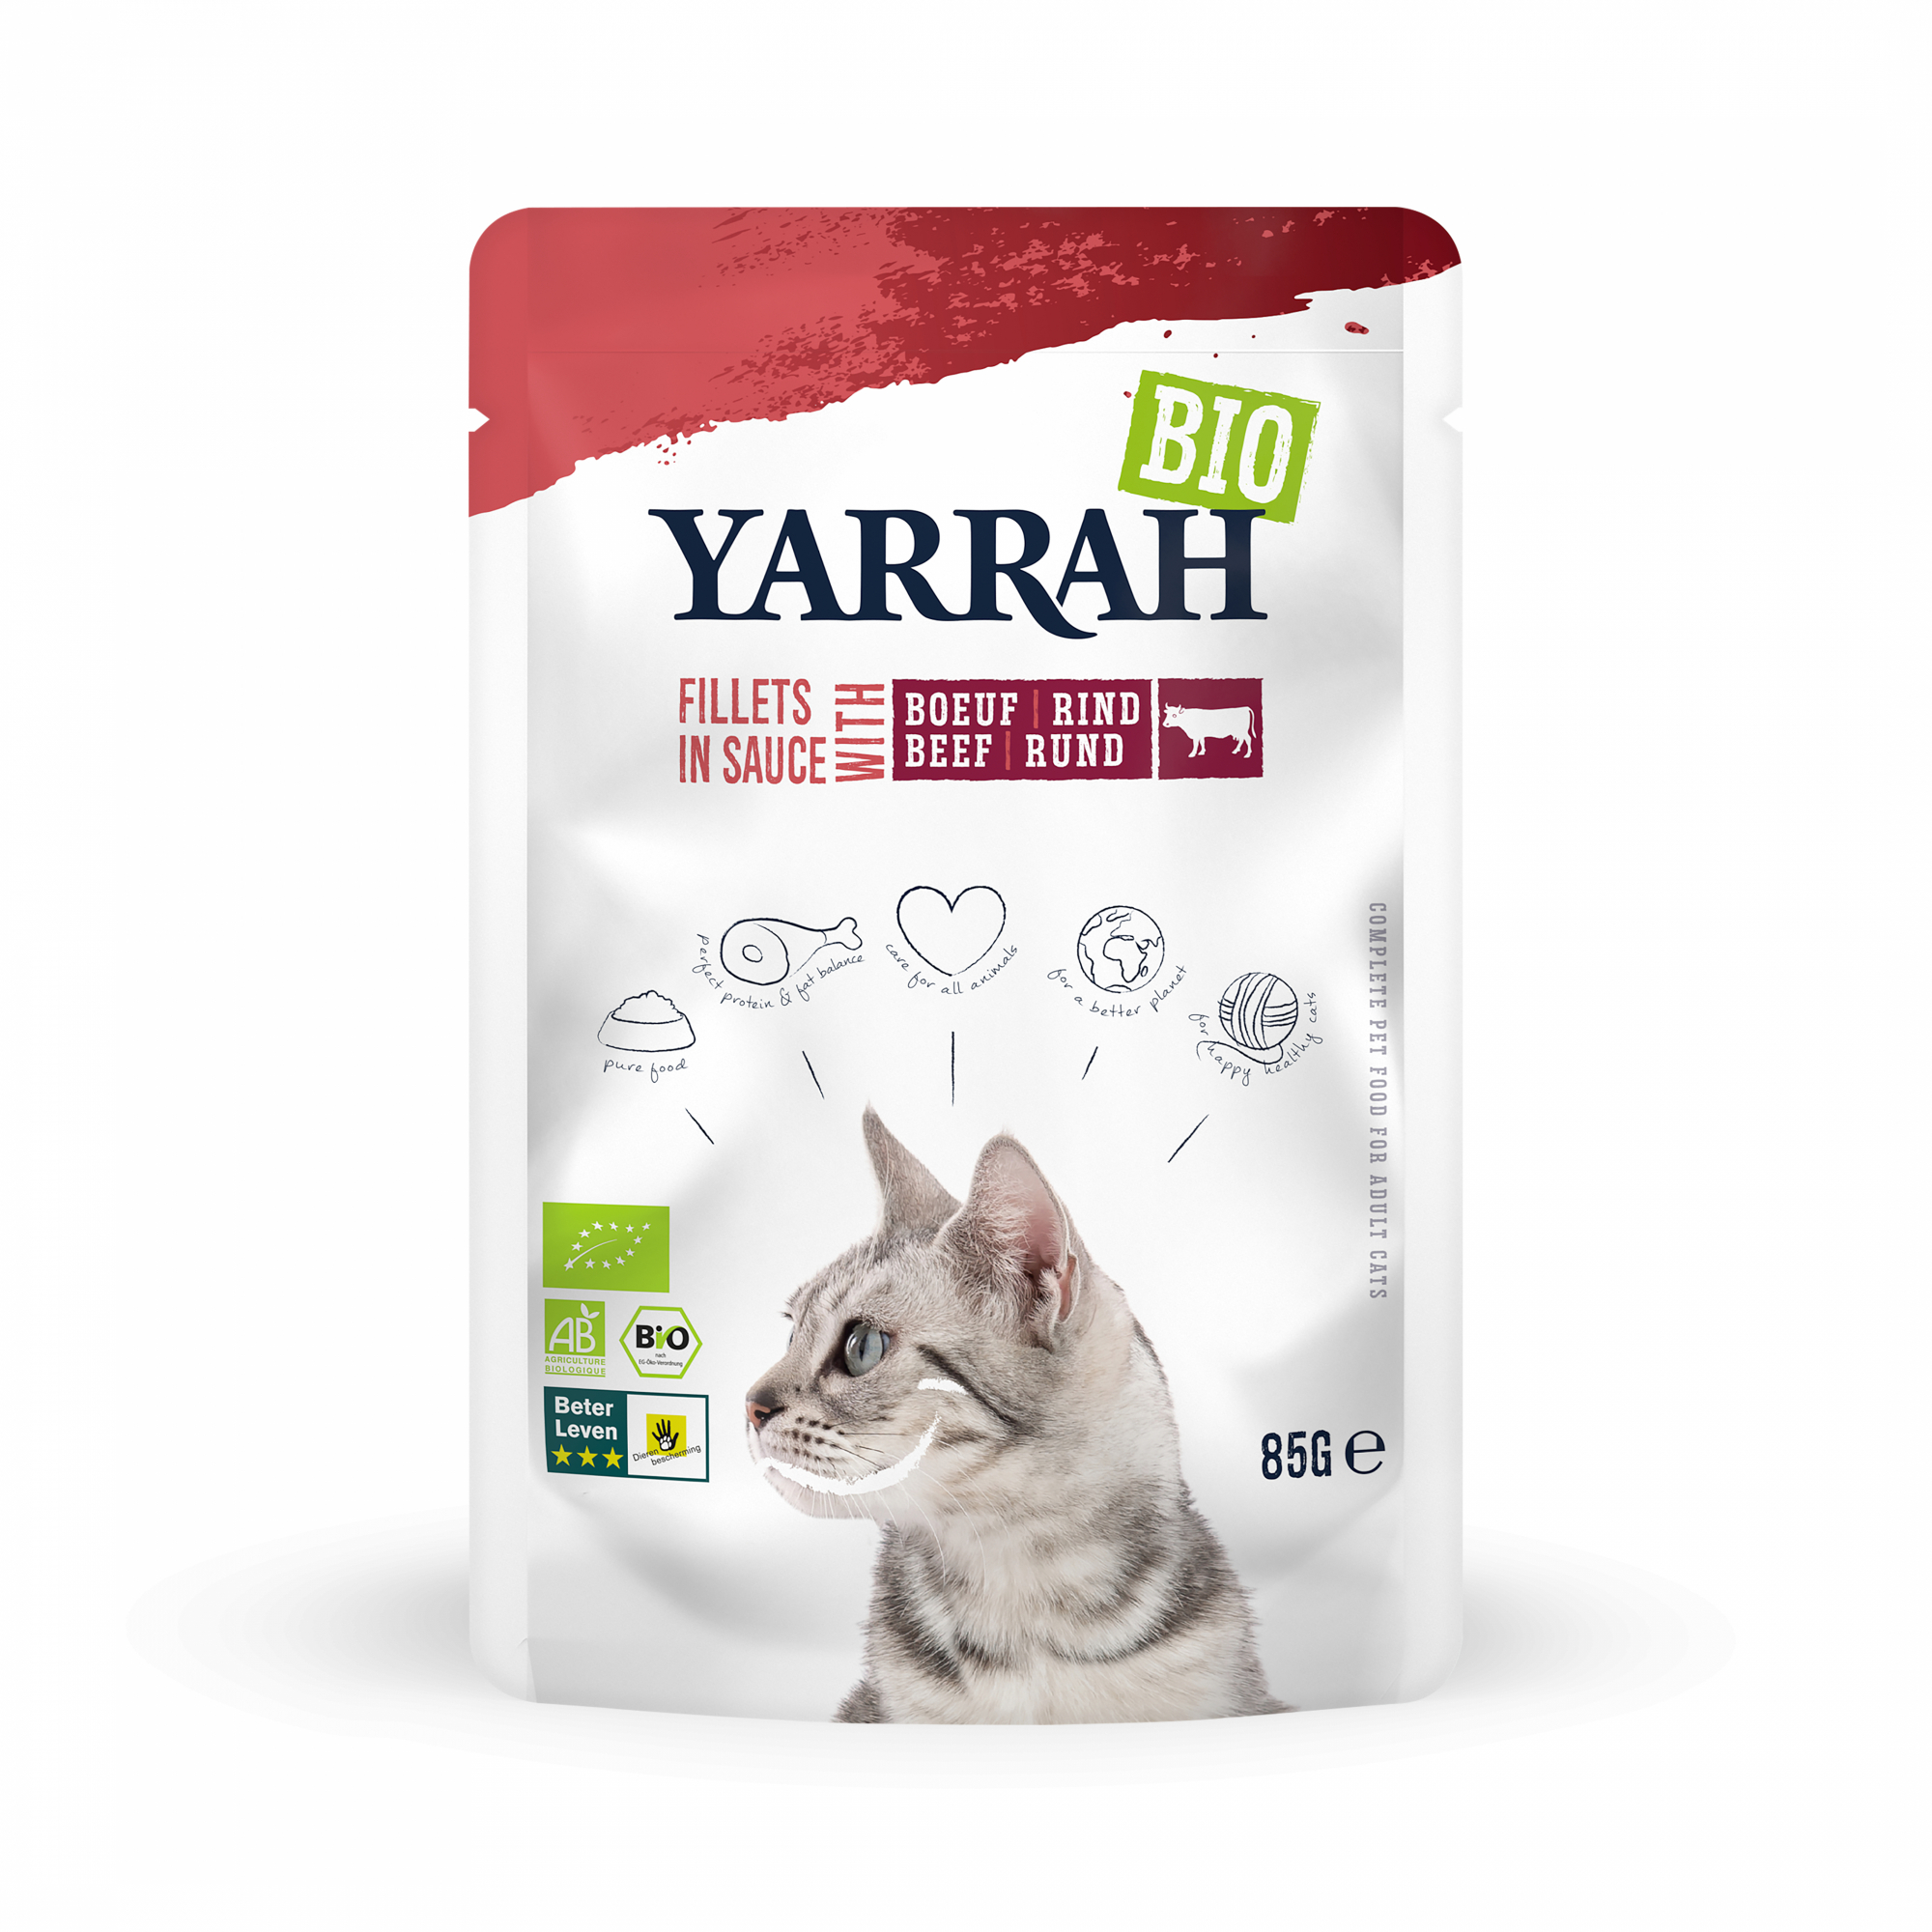 YARRAH Bio Filet en sauce pour chat - plusieurs saveurs disponibles